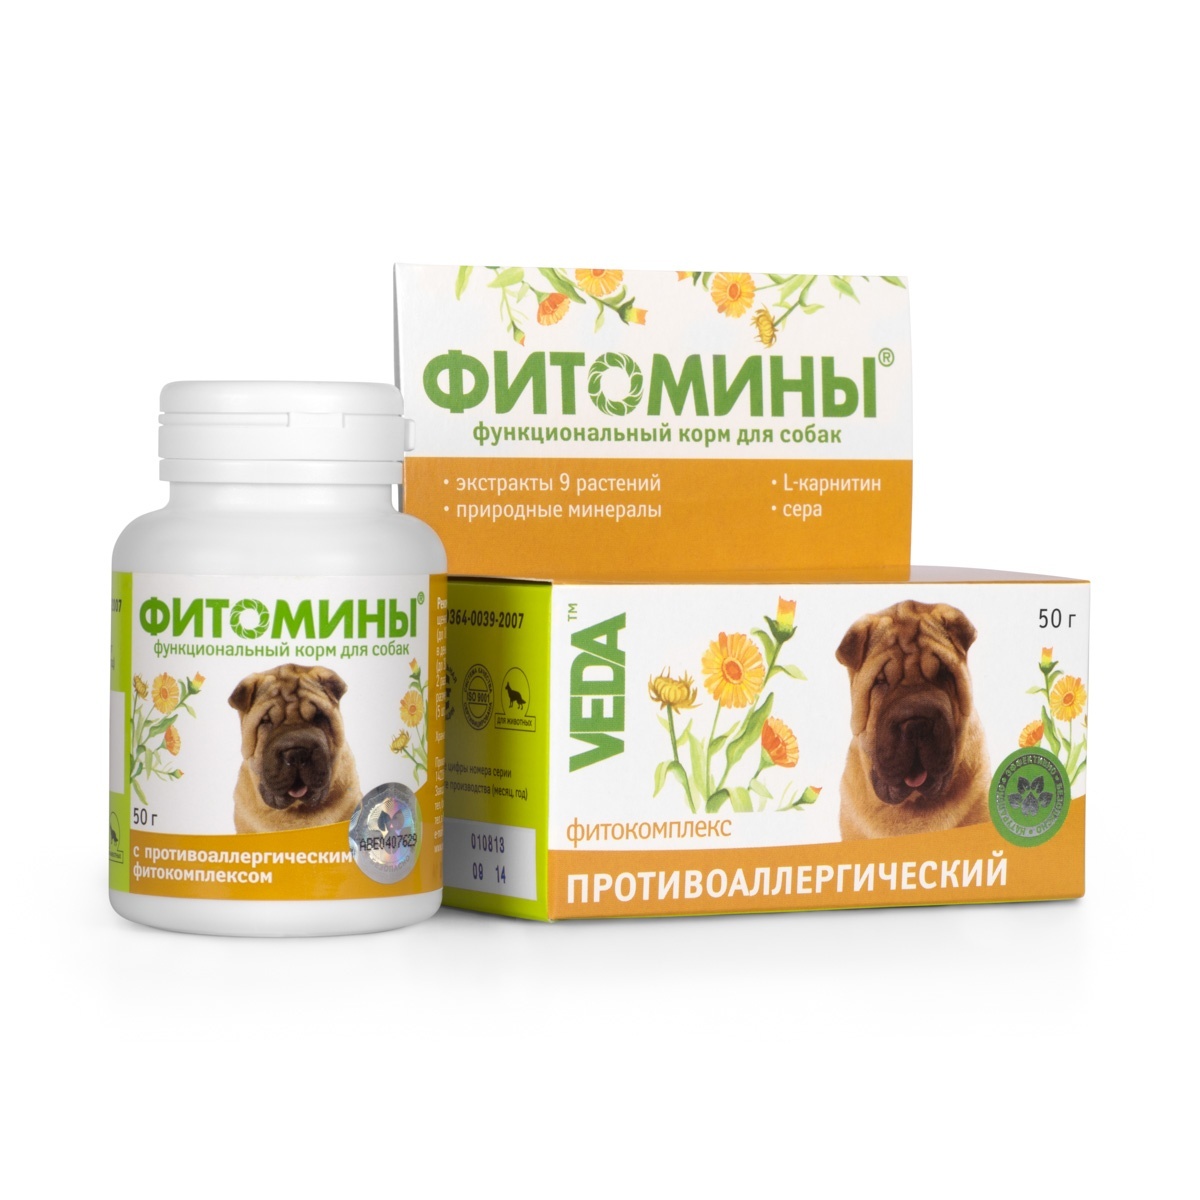 Веда Веда фитомины от аллергии для собак, 100 таб. (50 г) фитомины для собак от аллергии 100таб 1